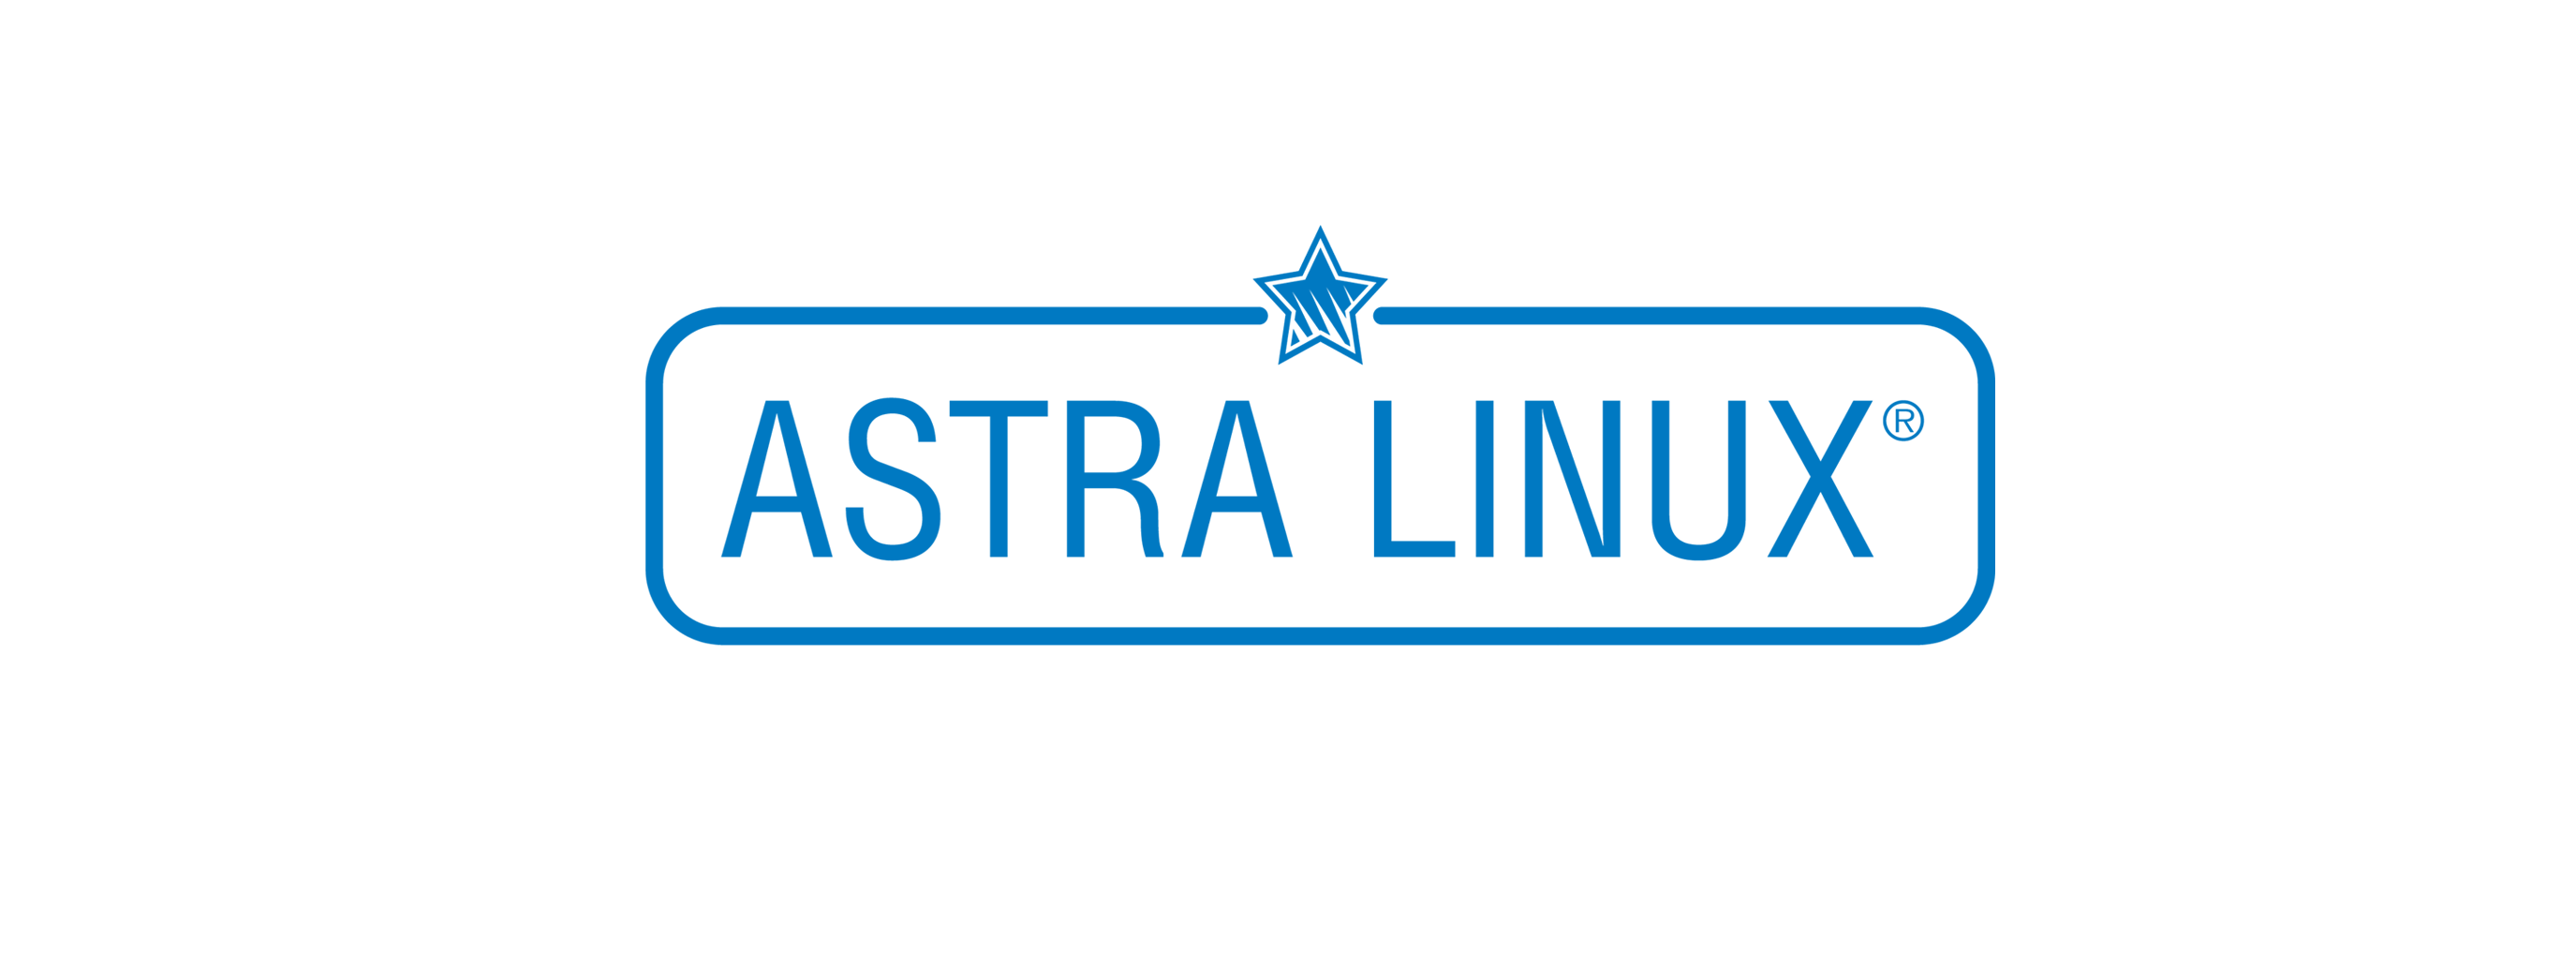 Лицензия РусБИТех Astra Linux Special Edition (очередное обновление 1.7), уровень защищенности Максимальный (Смоленск), РУСБ.10015-01 (ФСТЭК), Russian, на 36 месяцев базовая лицензия для виртуального сервера, электронный ключ (OS2101X8617COP000VS02-PO36) Astra Linux Special Edition (очередное обновление 1.7), уровень защищенности Максимальный (Смоленск) - фото 1